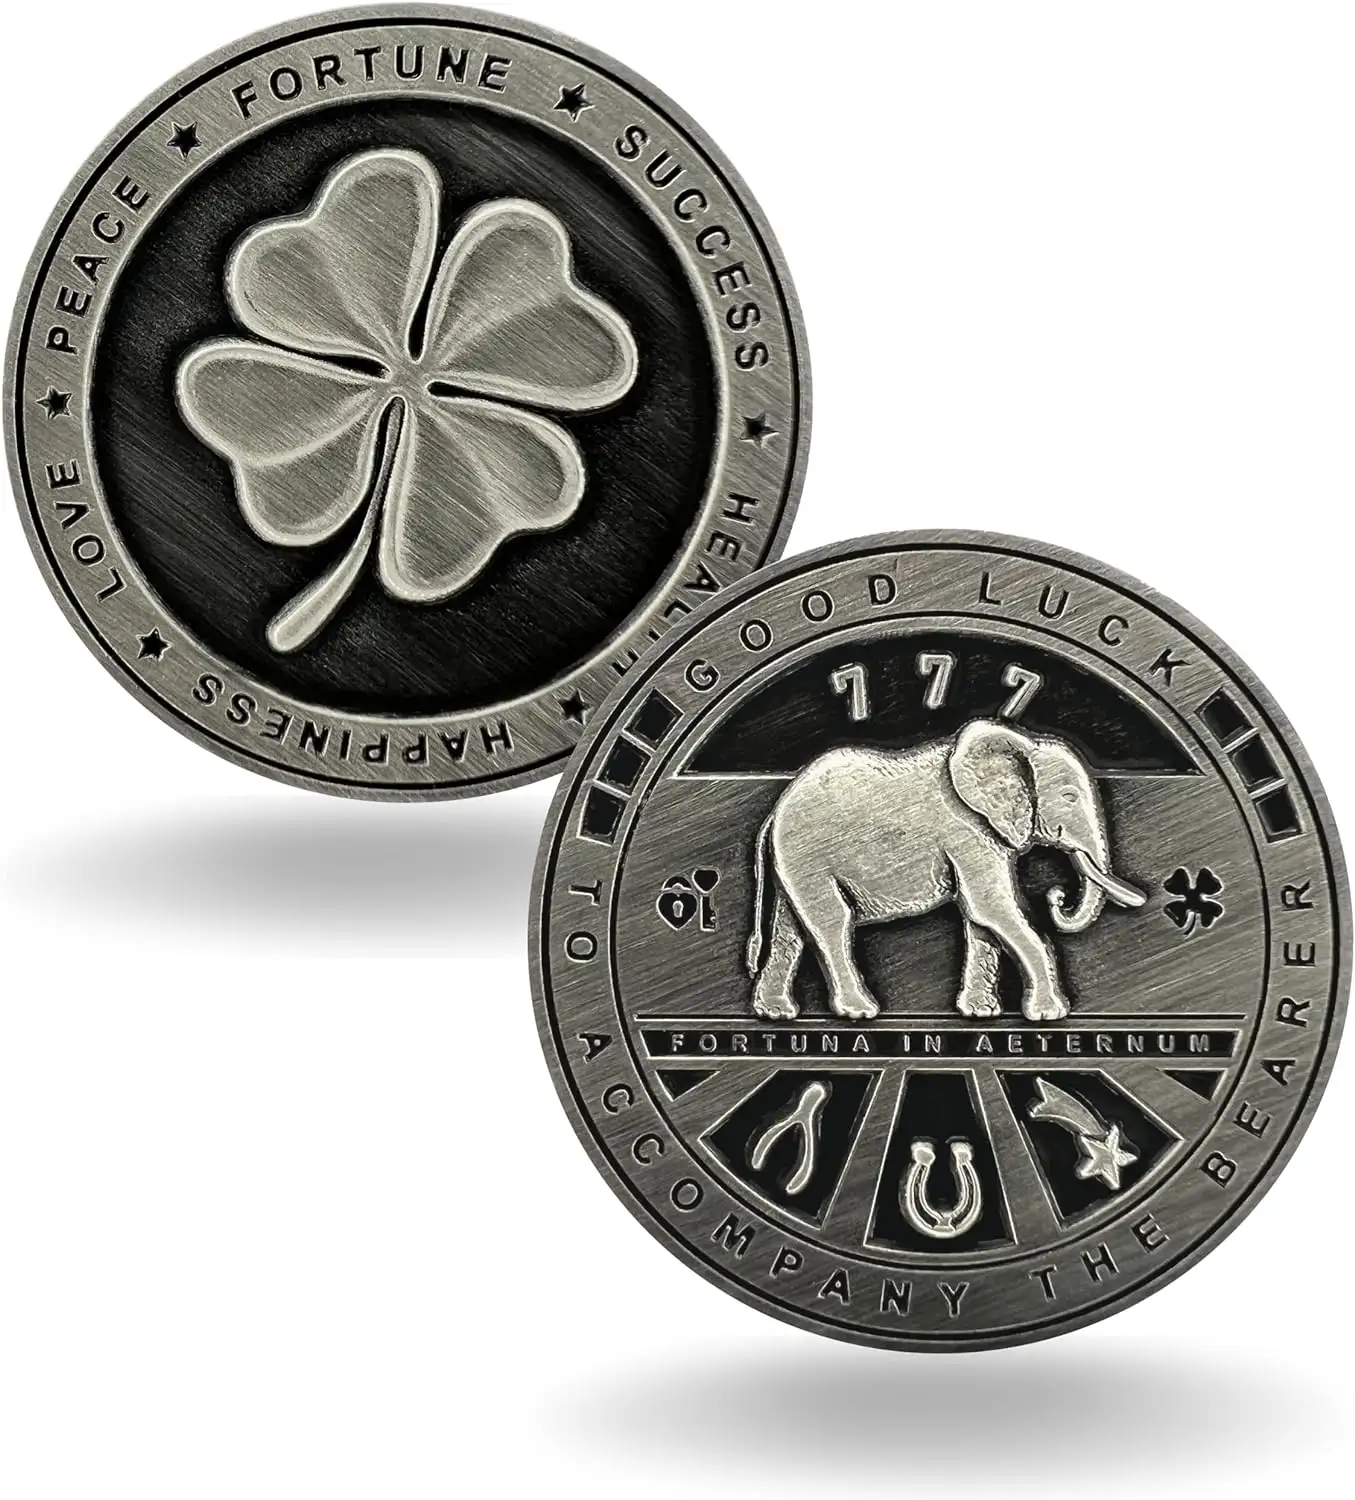 Monete ricordo commemorative vintage personalizzate monete buona fortuna in metallo antico argento rame oro oro portafortuna monete benedizione